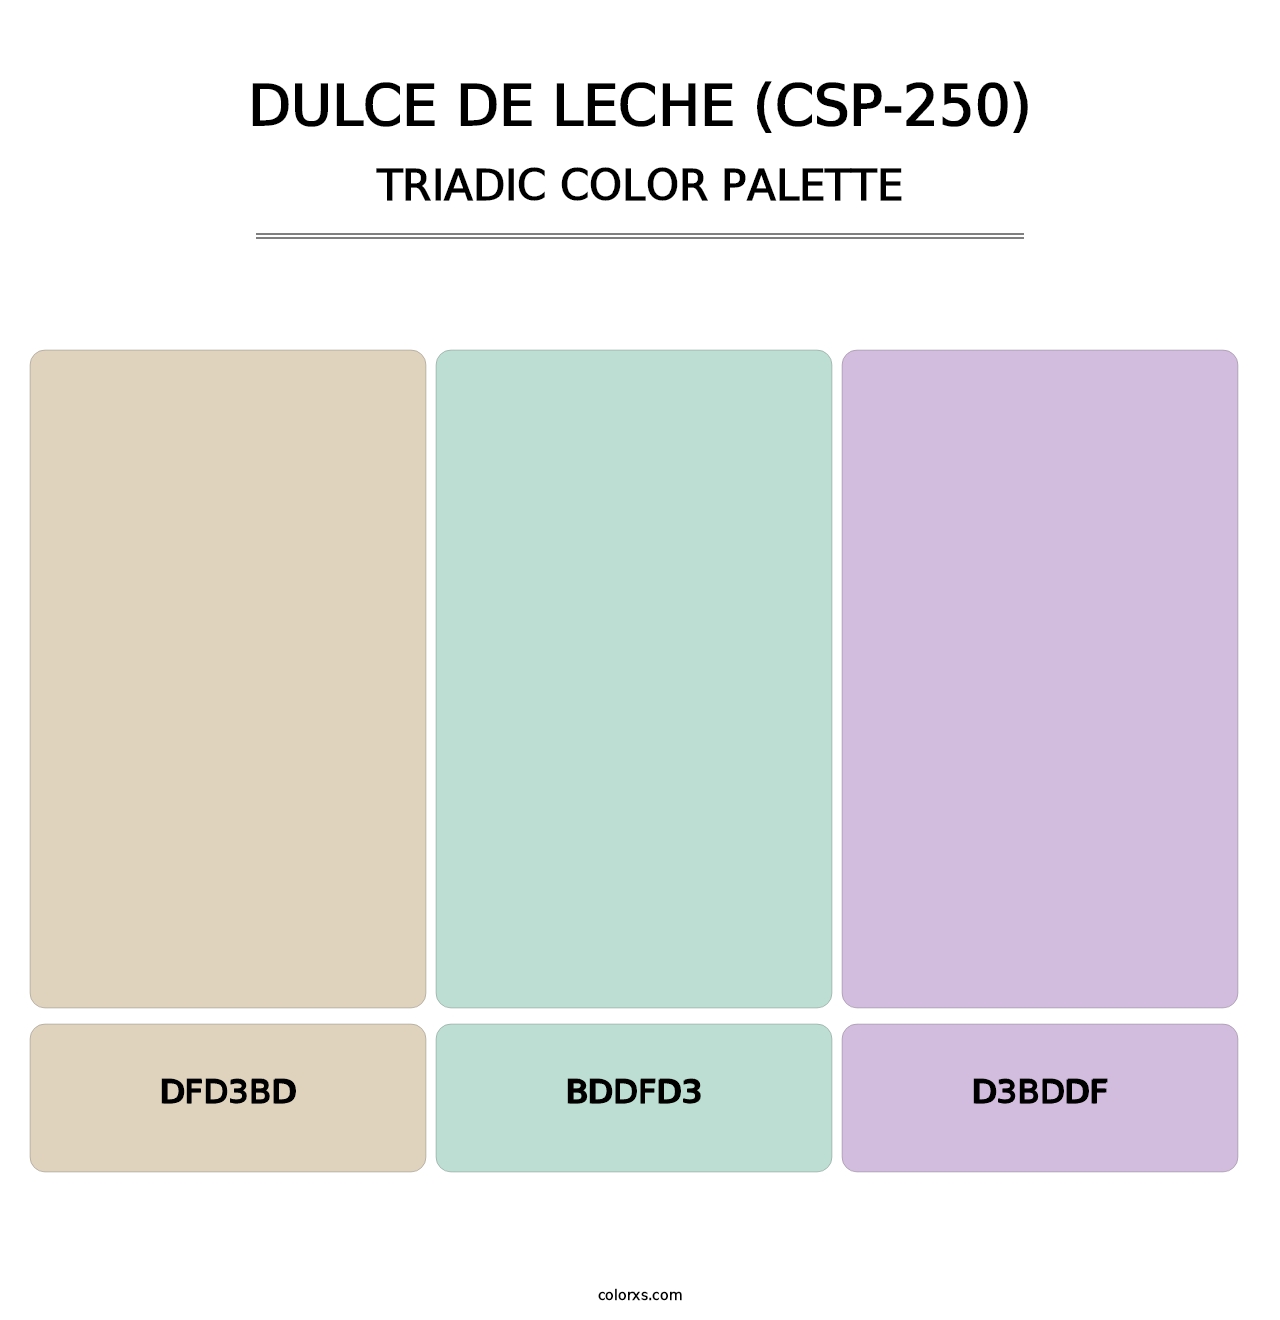 Dulce de Leche (CSP-250) - Triadic Color Palette